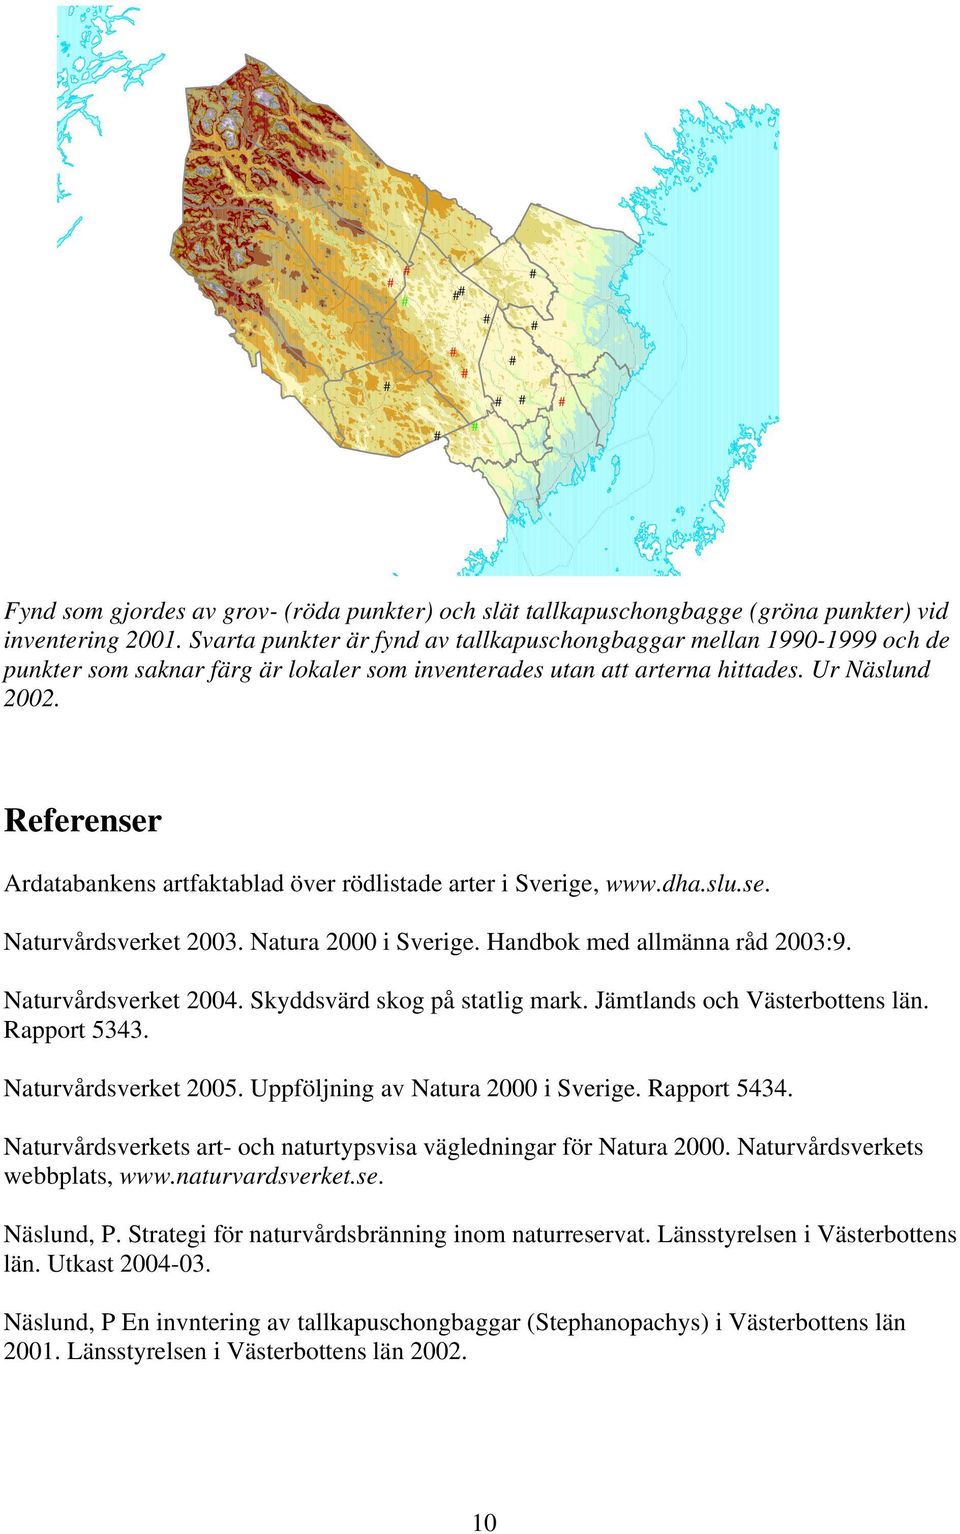 Referenser Ardatabankens artfaktablad över rödlistade arter i verige, www.dha.slu.se. Naturvårdsverket 2003. Natura 2000 i verige. Handbok med allmänna råd 2003:9. Naturvårdsverket 2004.